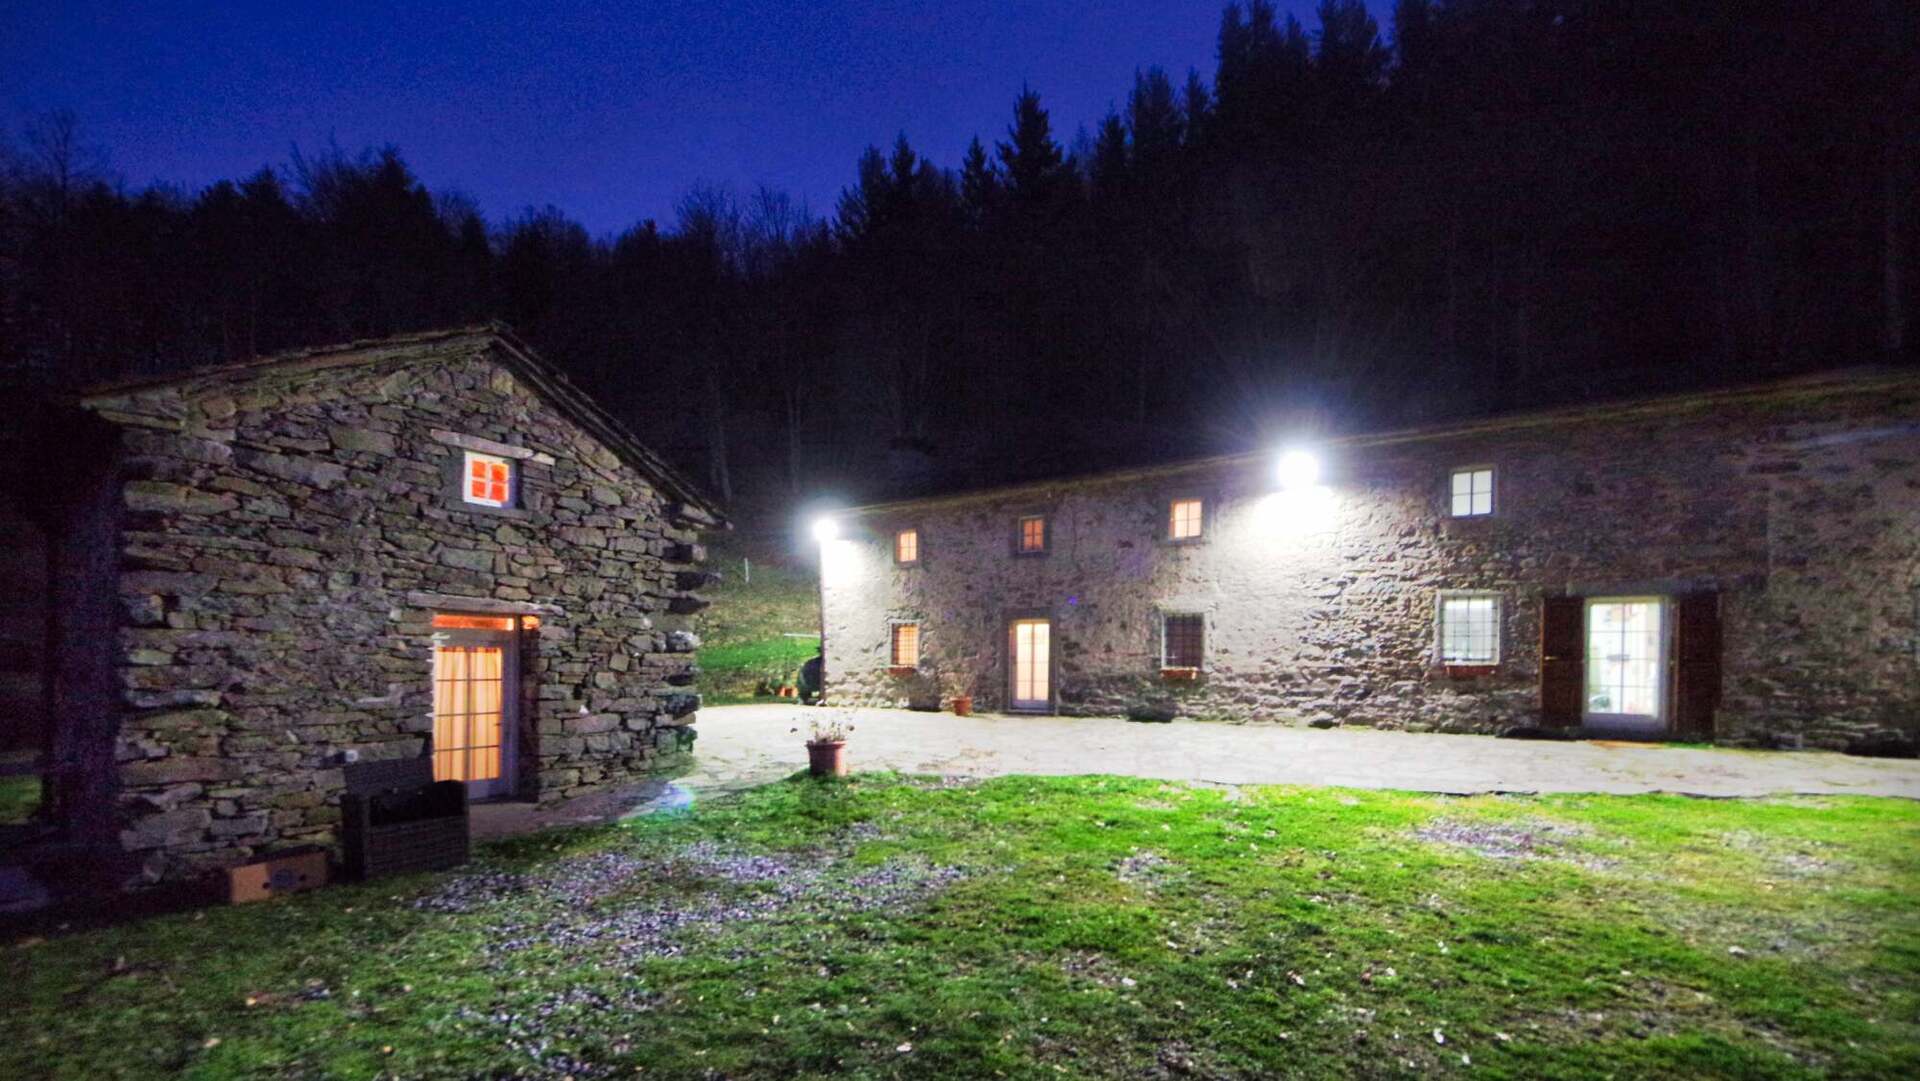 For sale cottage in mountain Cutigliano Toscana